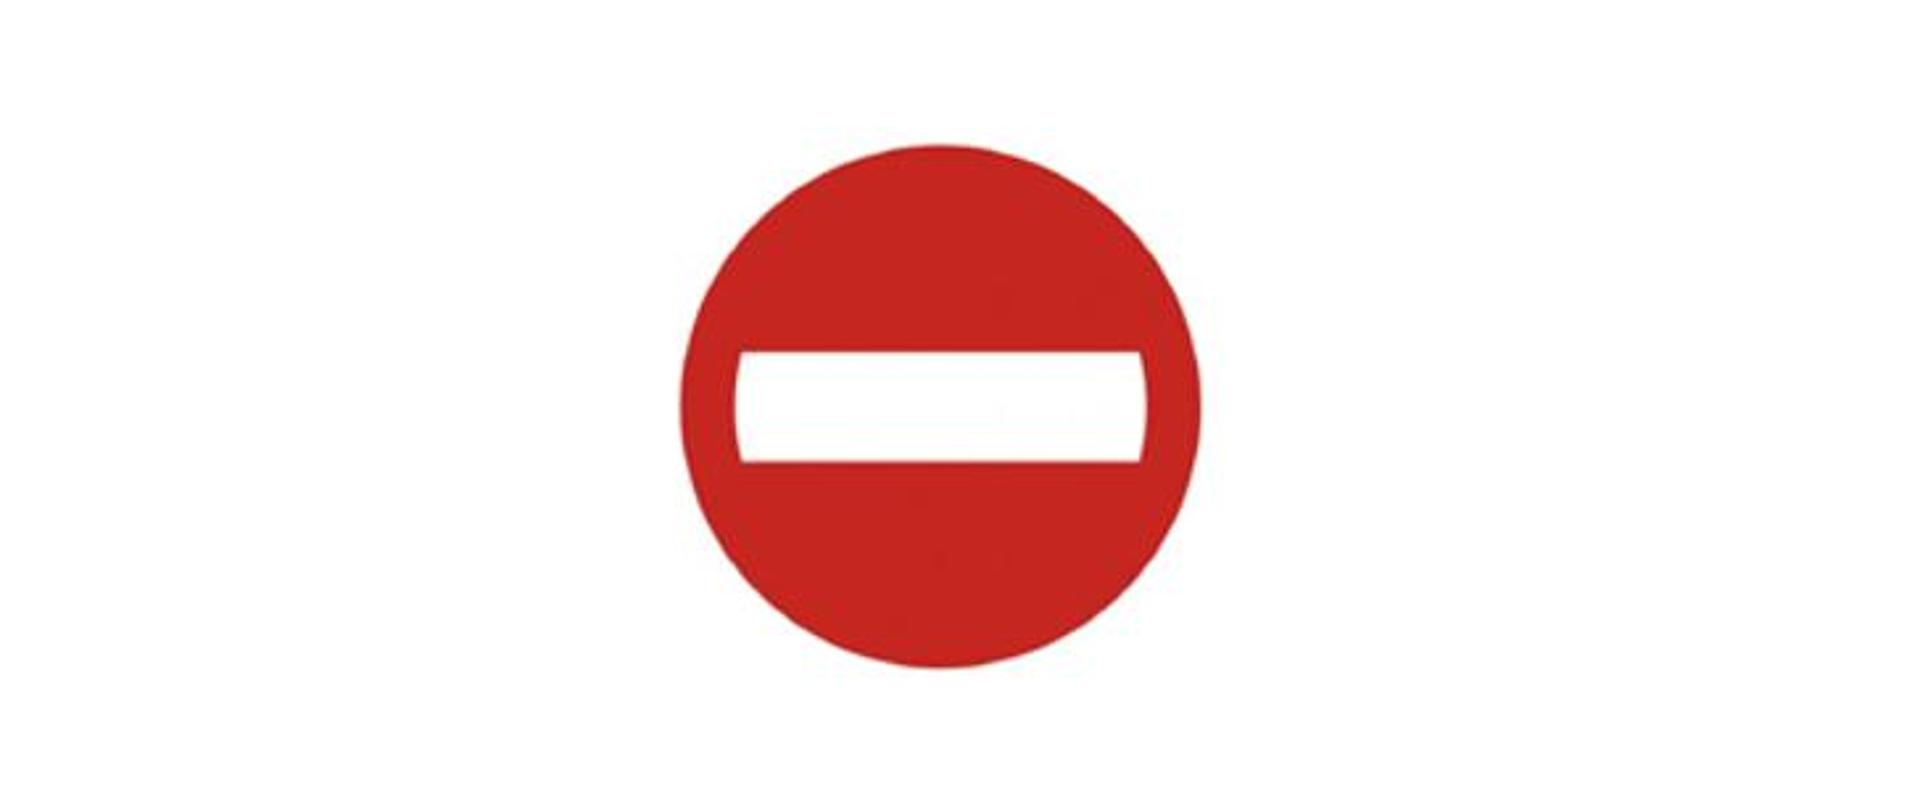 Zdjęcie pokazujące znak drogowy zakaz wjazdu, które symbolizuje zakaz wejścia dla terroryzmu